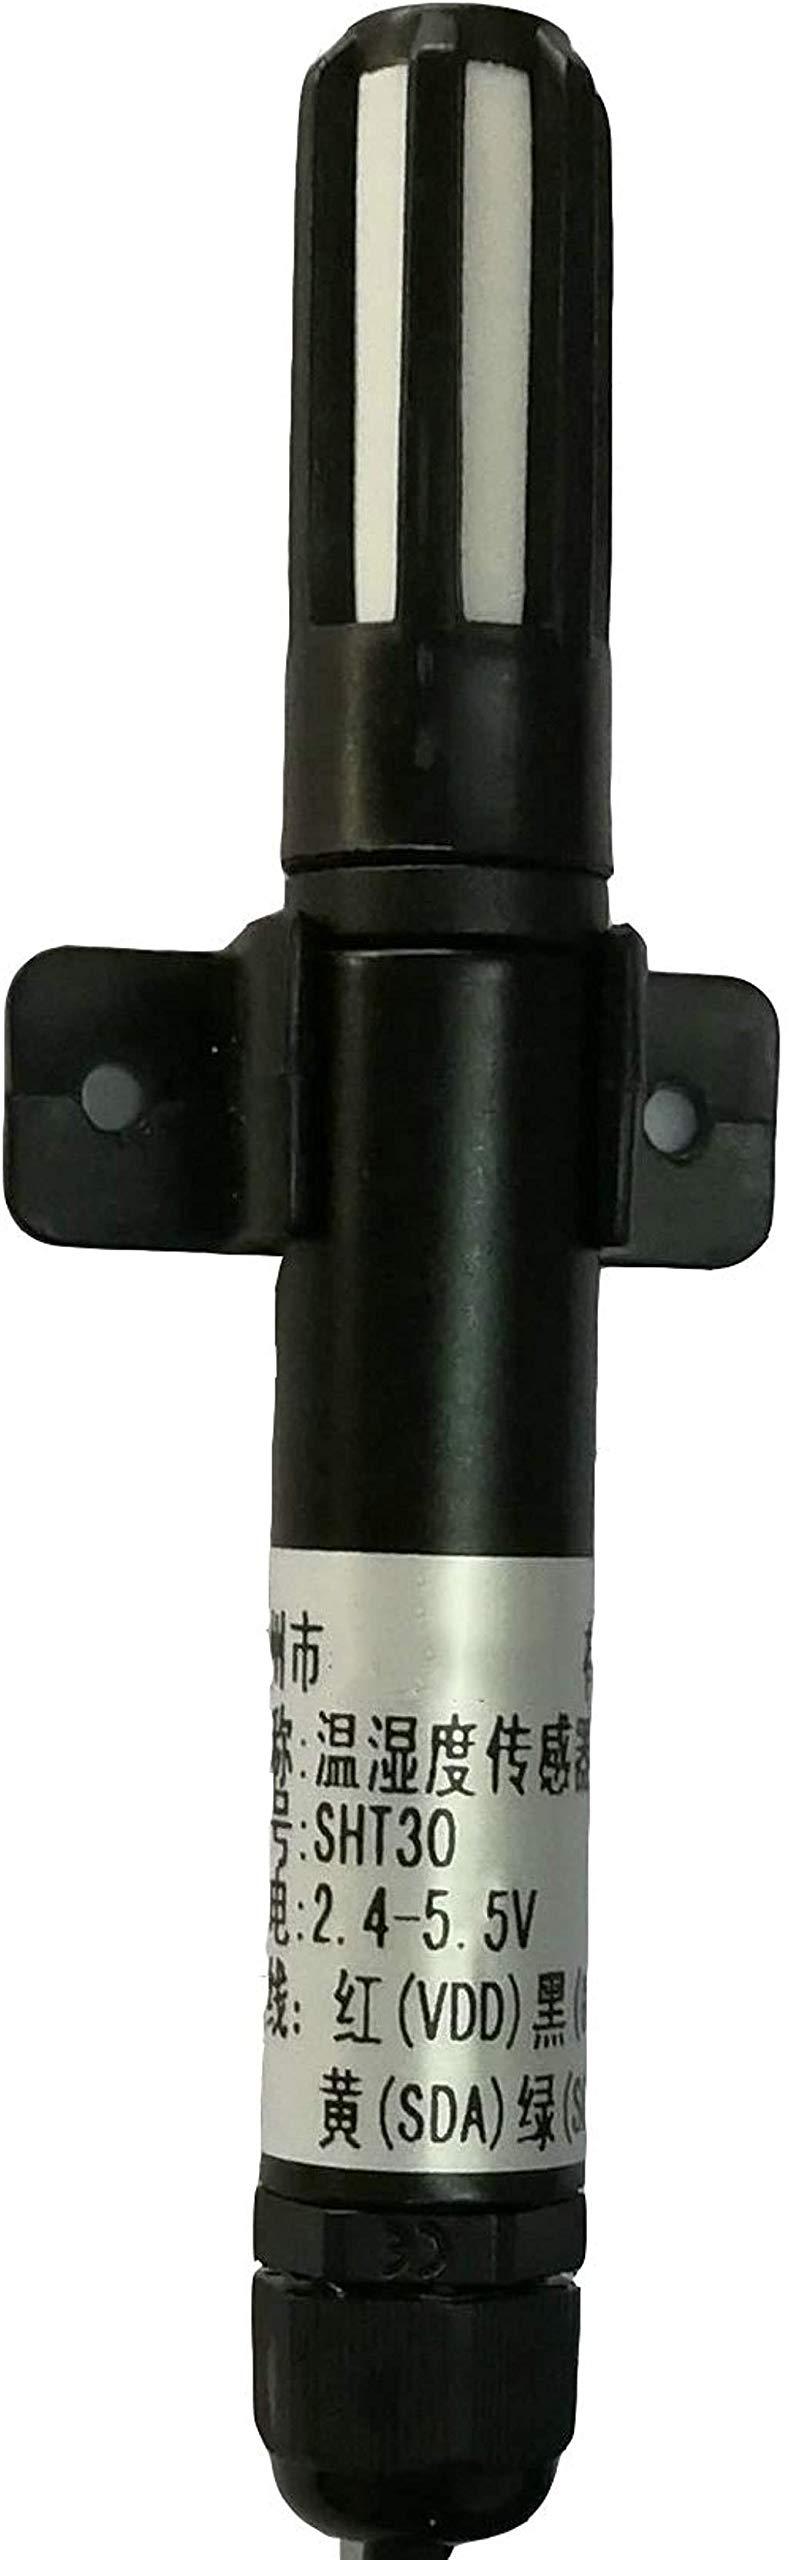 Taidacent SHT30 SHT31 High Precision Waterproof Digital Temperature Sensor 1M Cable Water Resistant Temperature and Humidity Sensor Air Temperature and Moisture Measurement (SHT31, Sheathed Cable) - LeoForward Australia